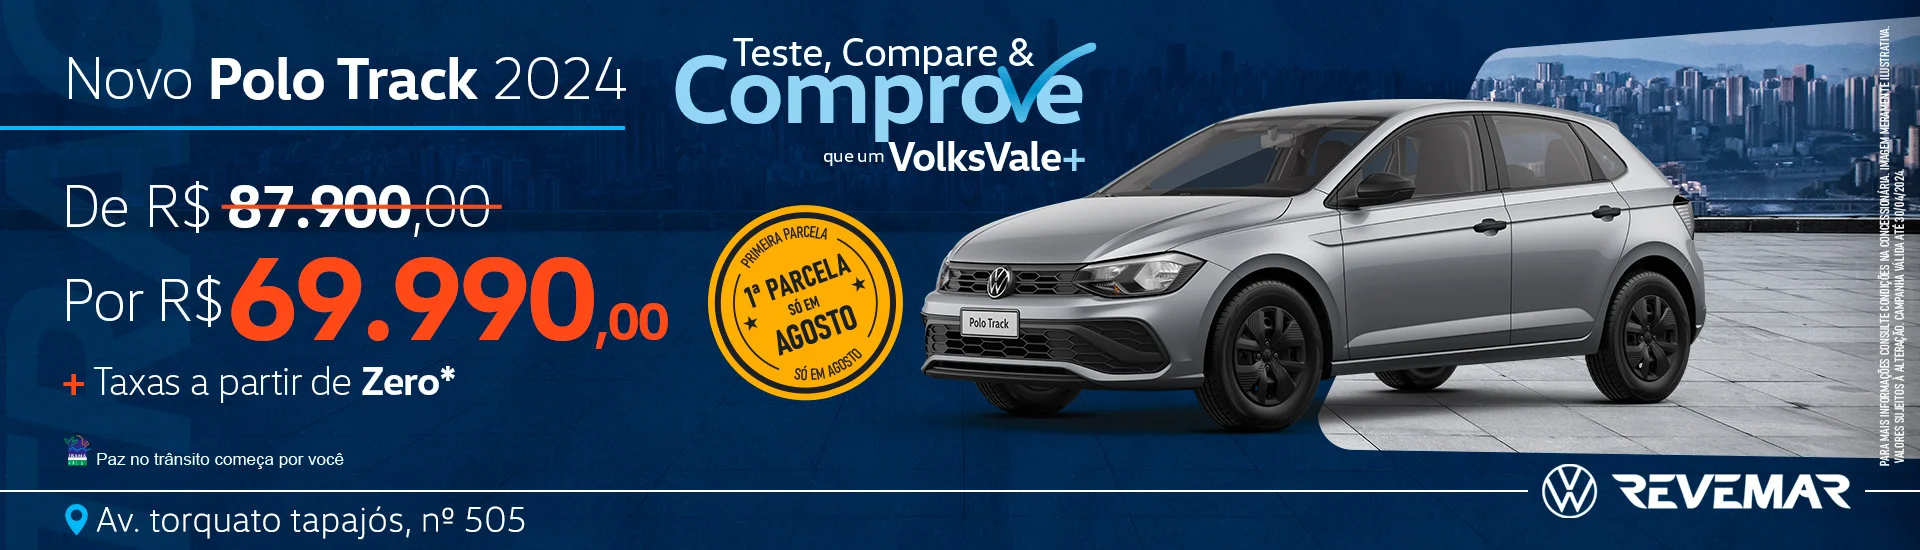 Teste, Compare e Comprove que um VolksVale+